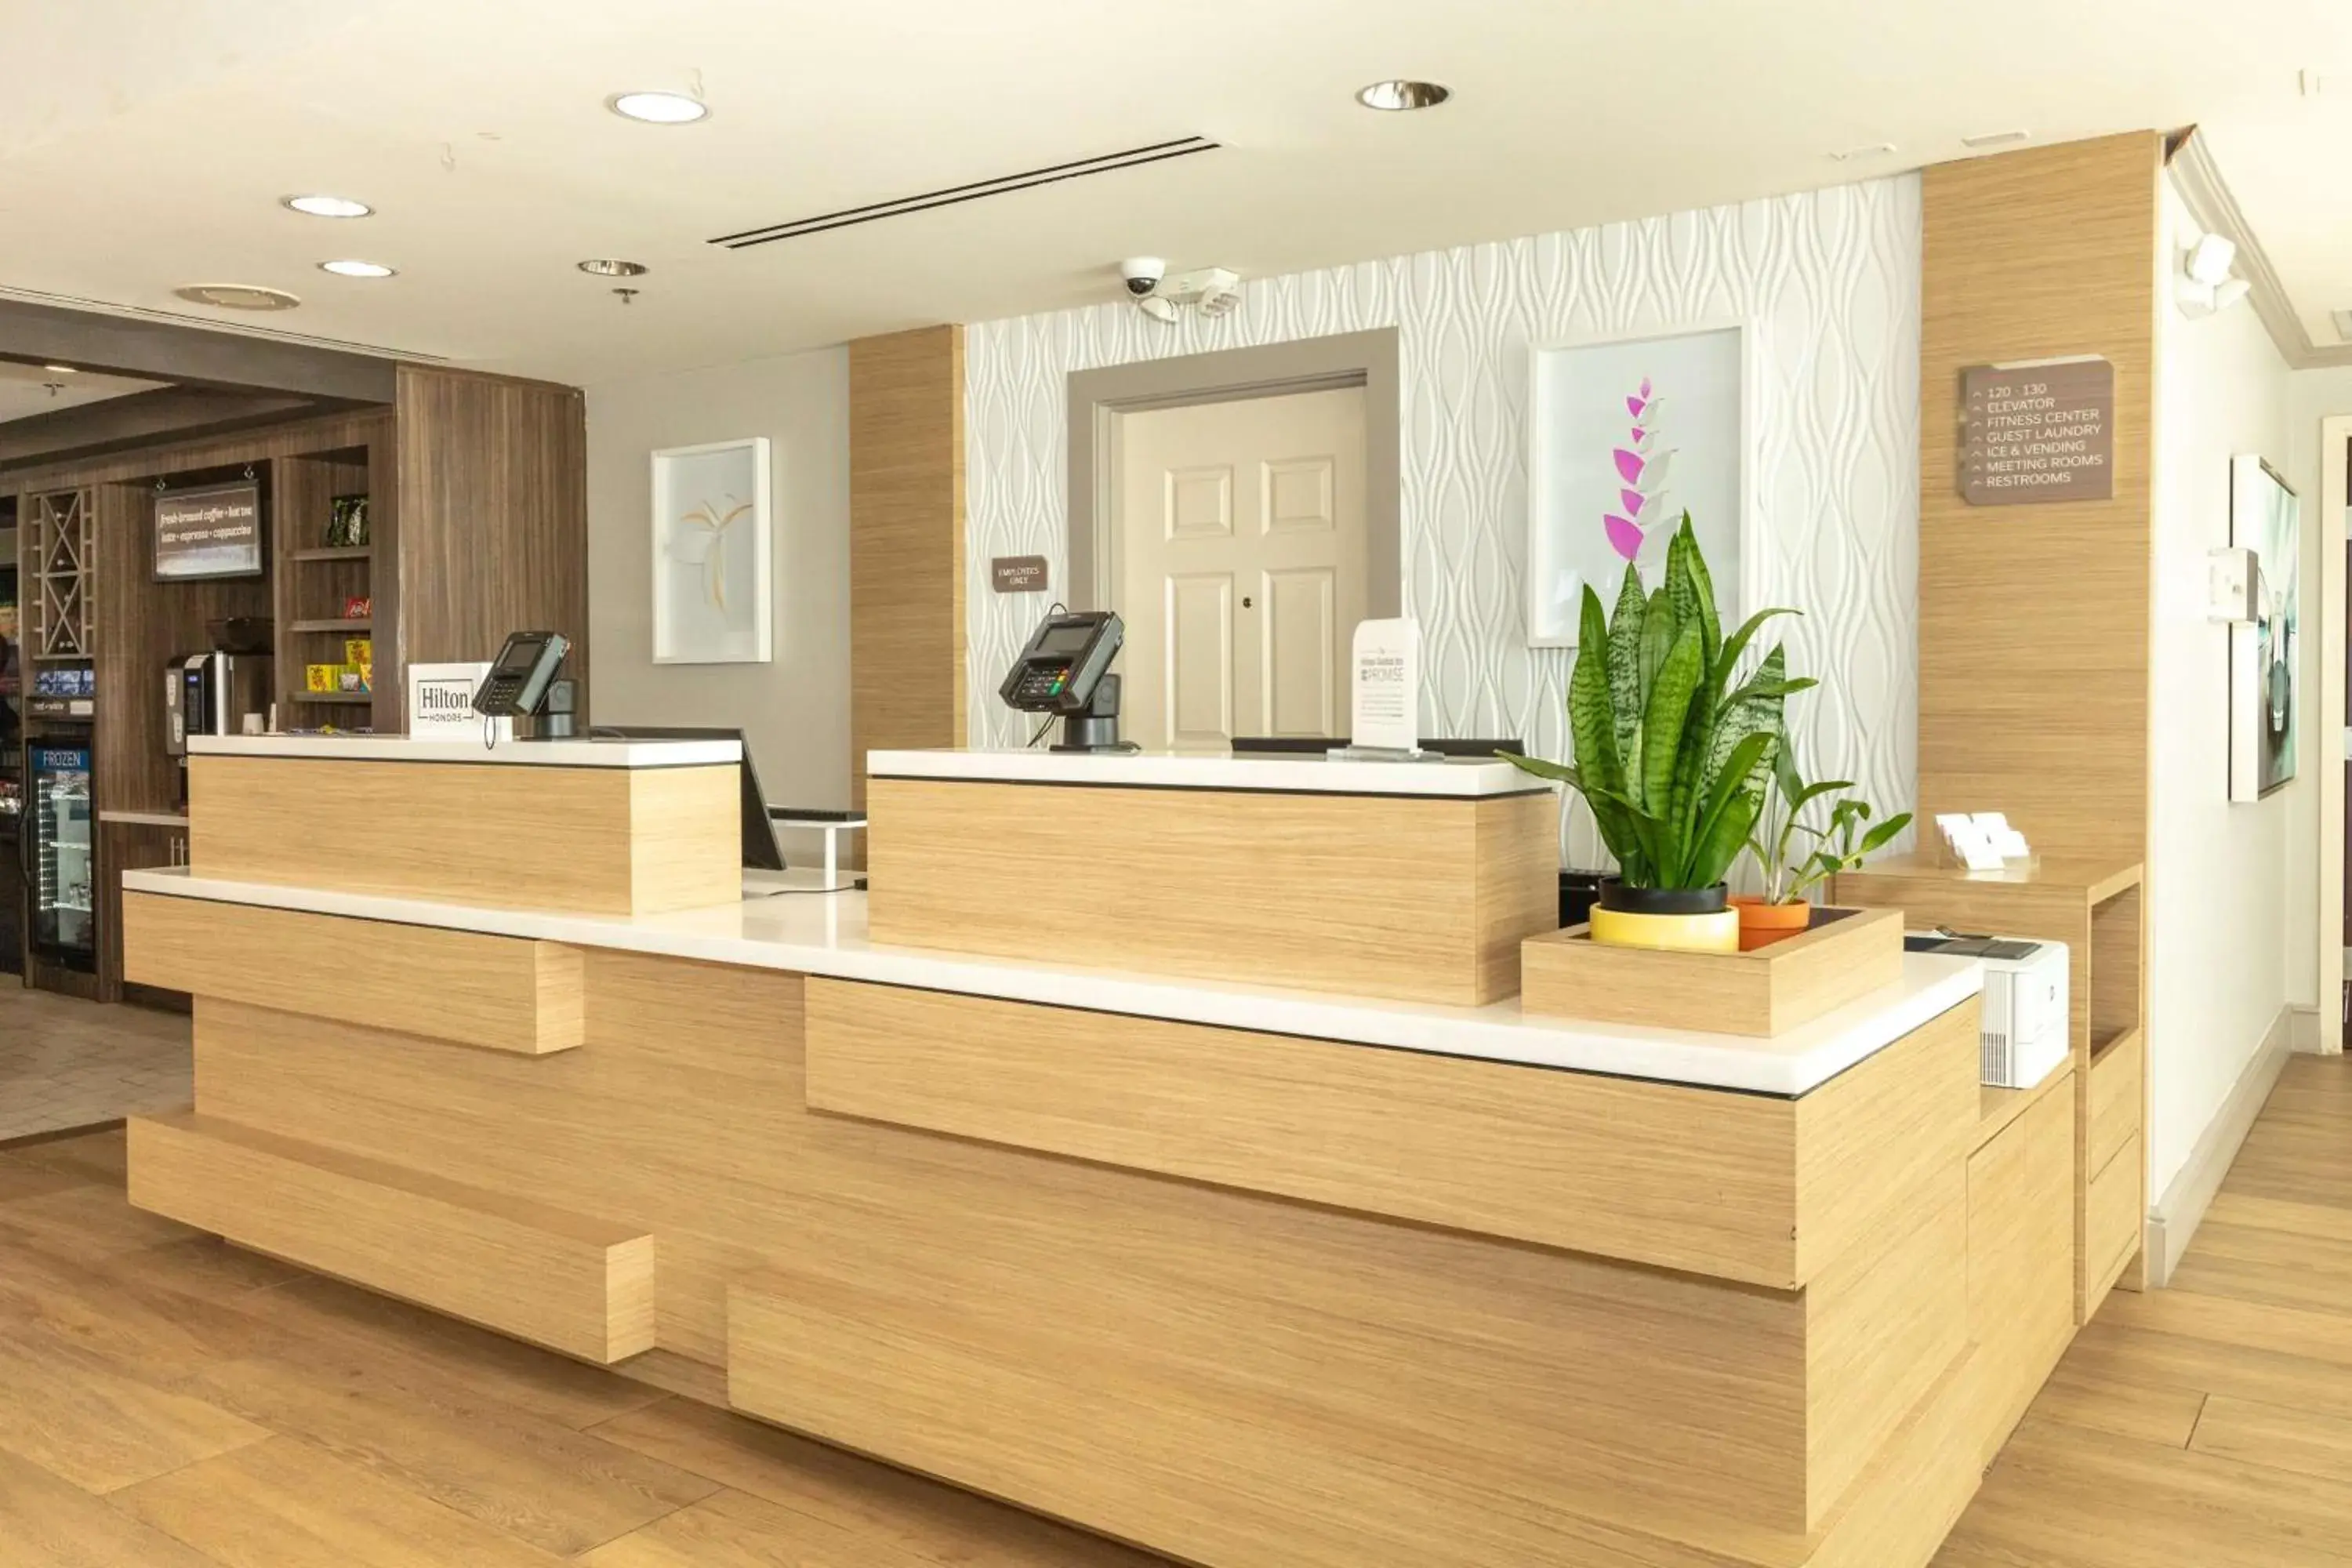 Lobby or reception, Lobby/Reception in Hilton Garden Inn Daytona Beach Airport